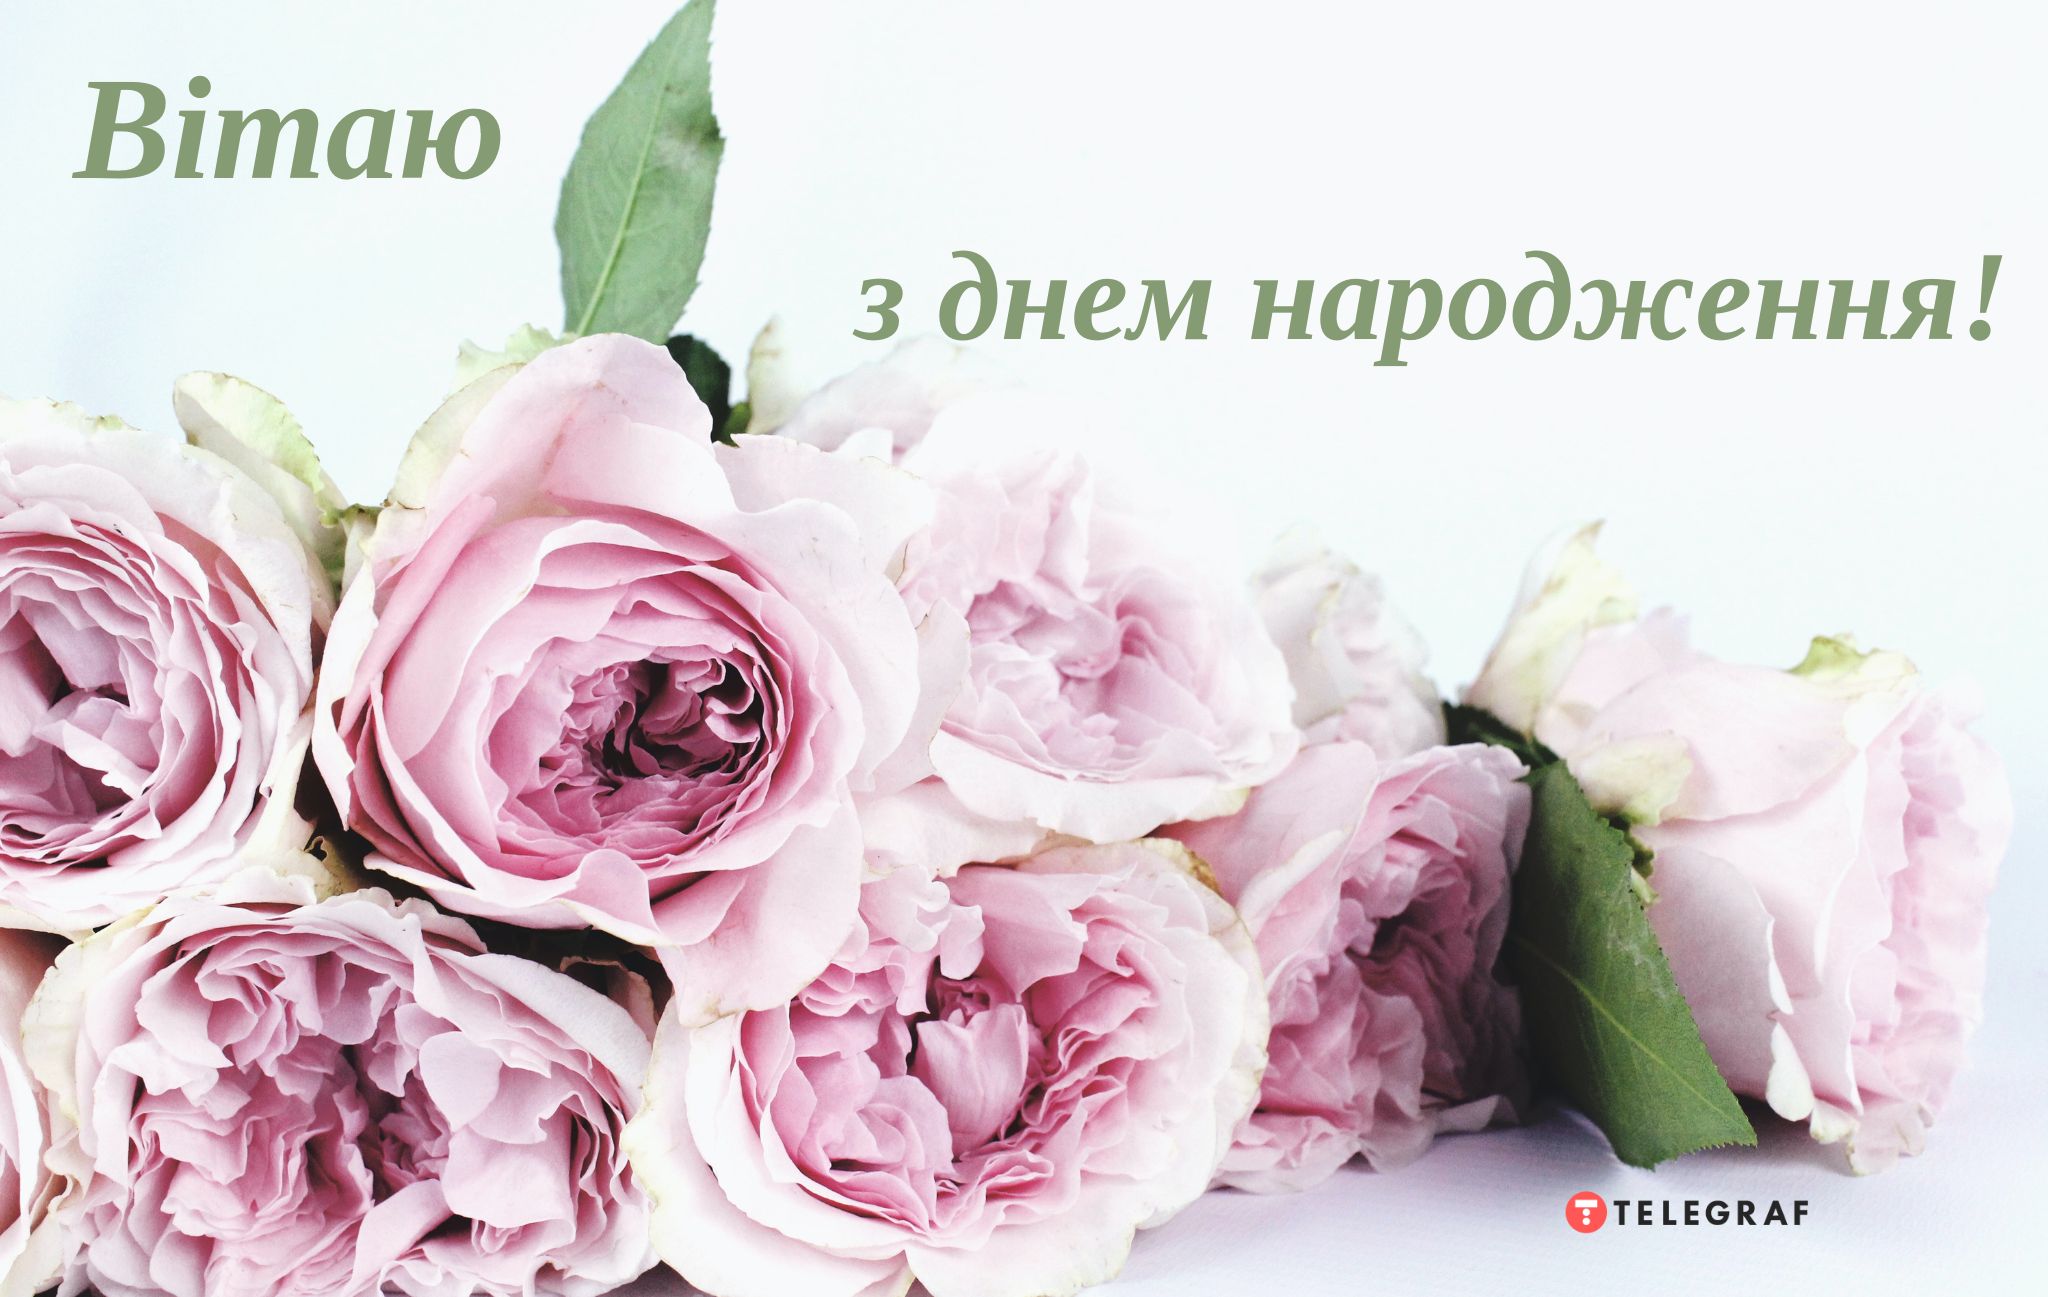 Поздравления с днем рождения на украинском языке